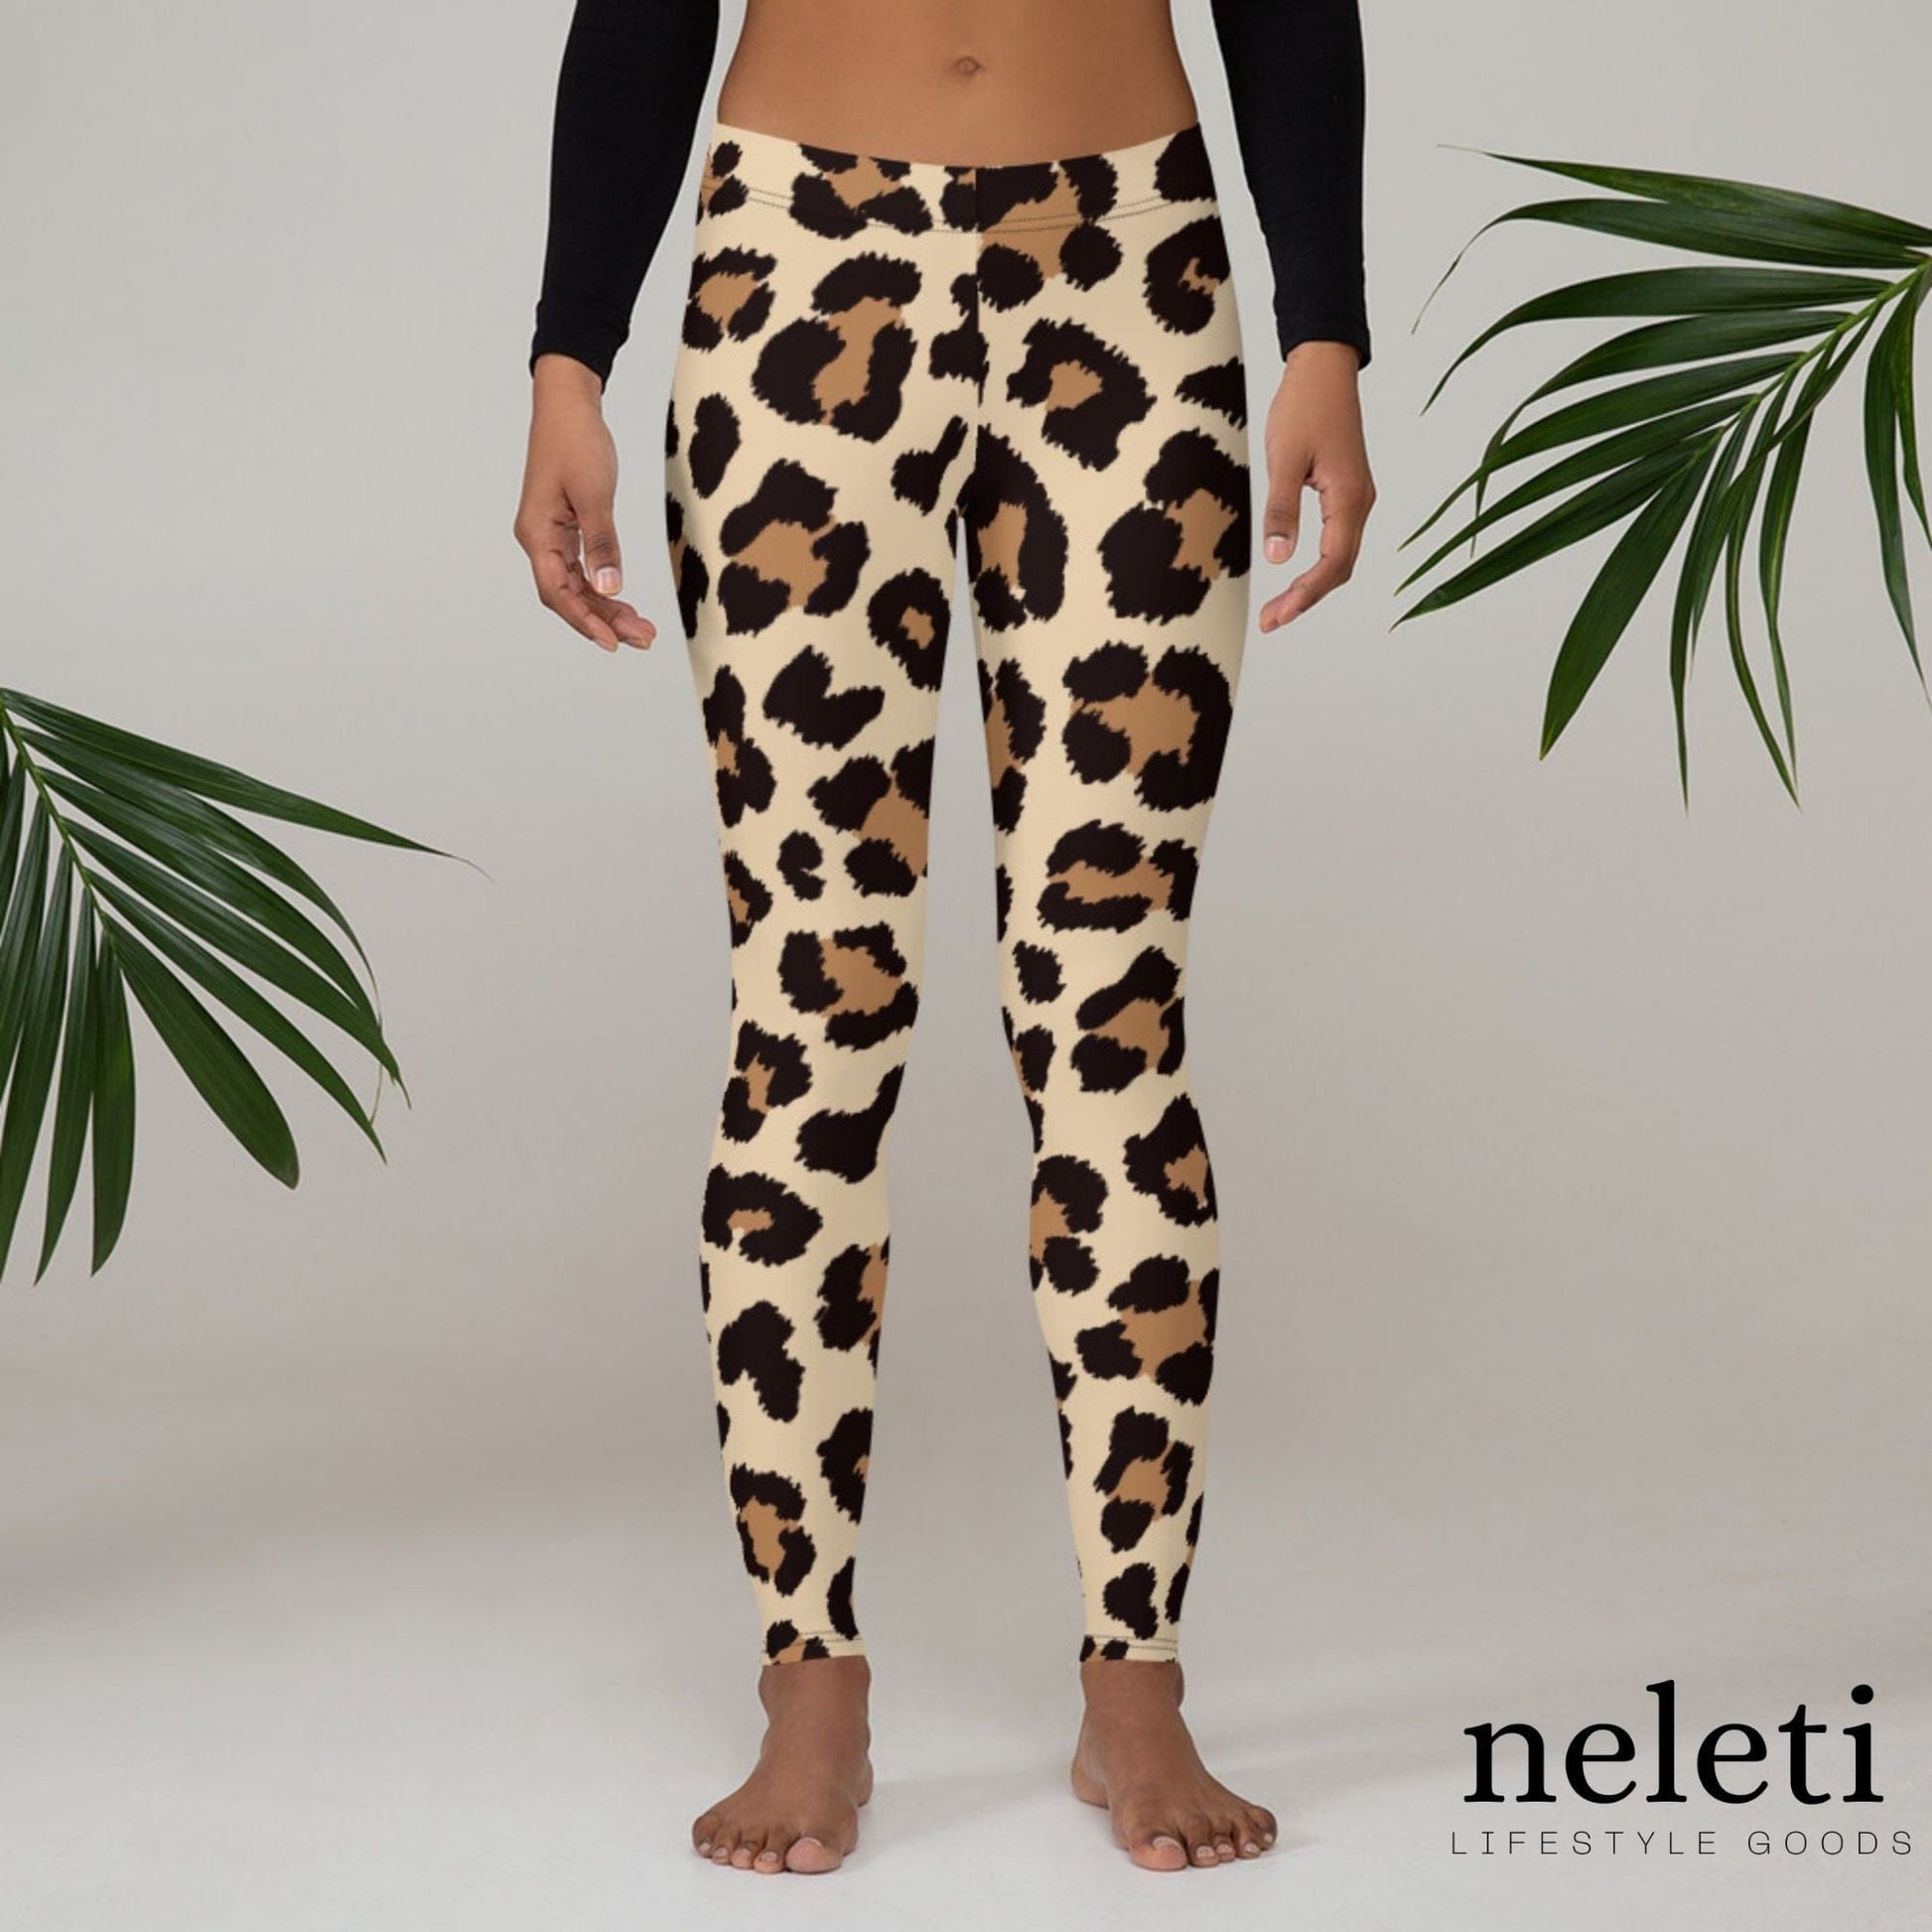 neleti.com-leopard-print-leggings-for-women